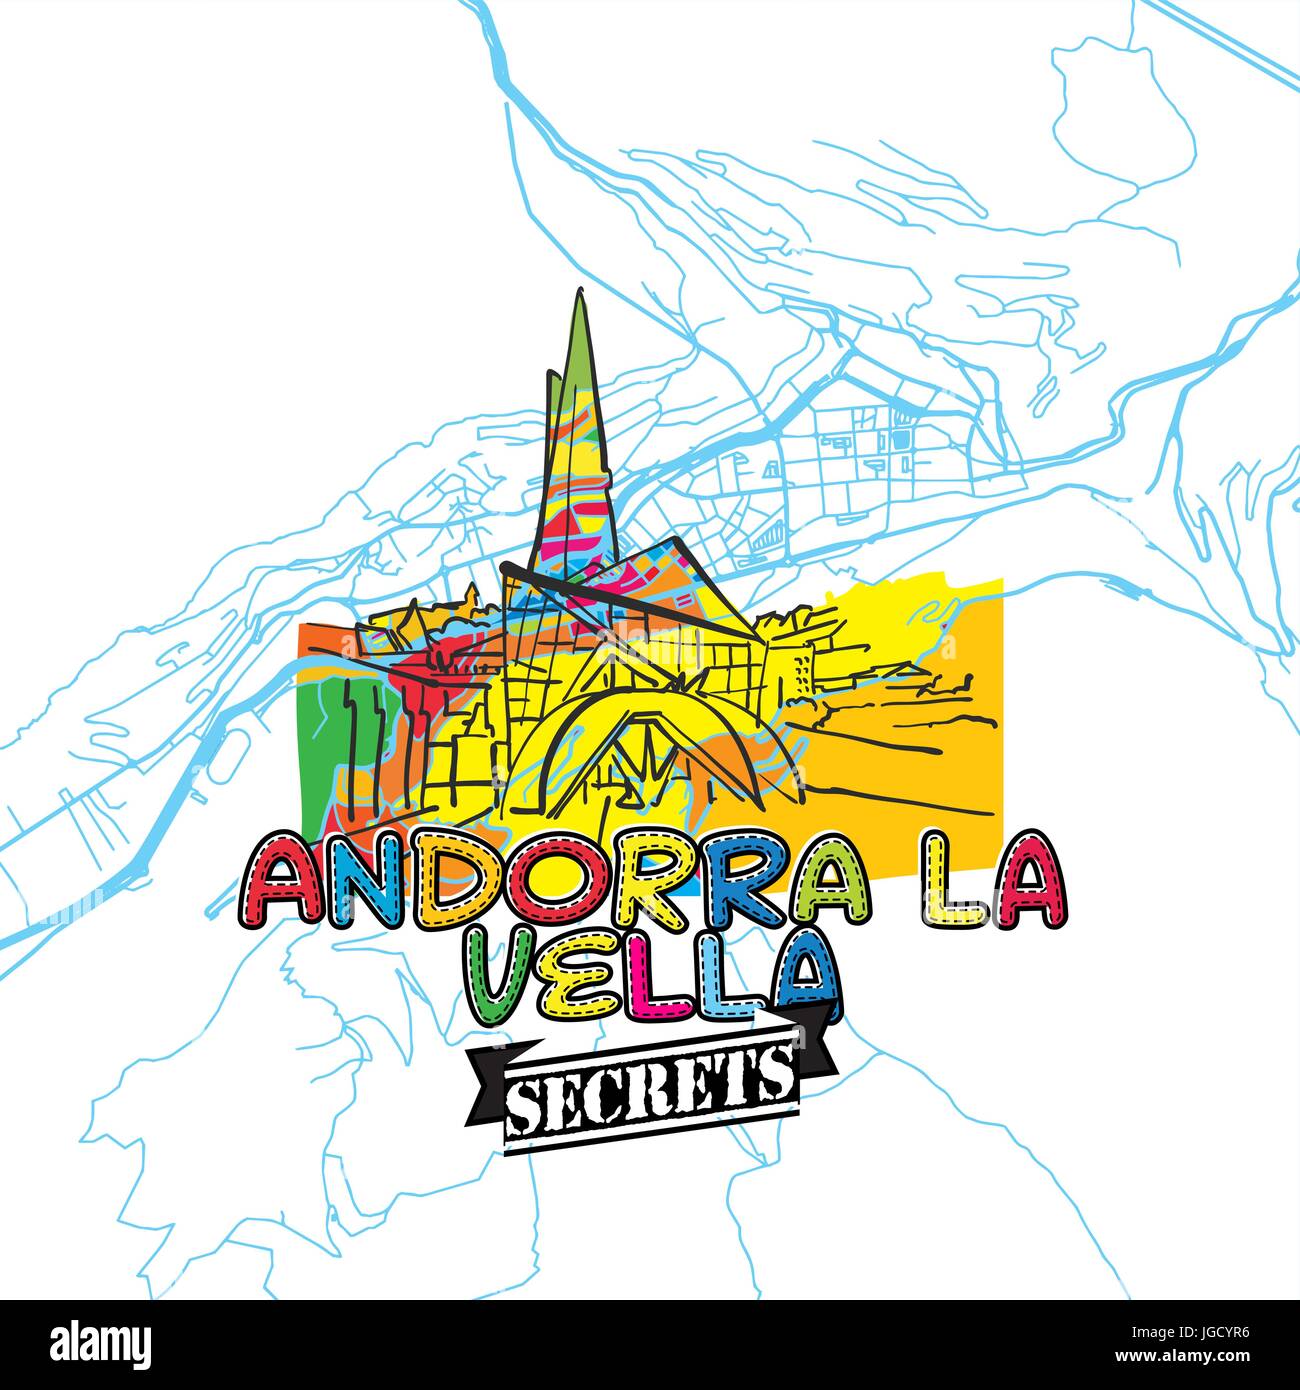 Andorra reisen Geheimnisse Art Map für die Zuordnung von Experten und Reiseführer. Handgemachte Stadt Logo, Typo-Abzeichen und Hand gezeichnete Vektor-Bild an der Spitze sind gruppiert eine Stock Vektor